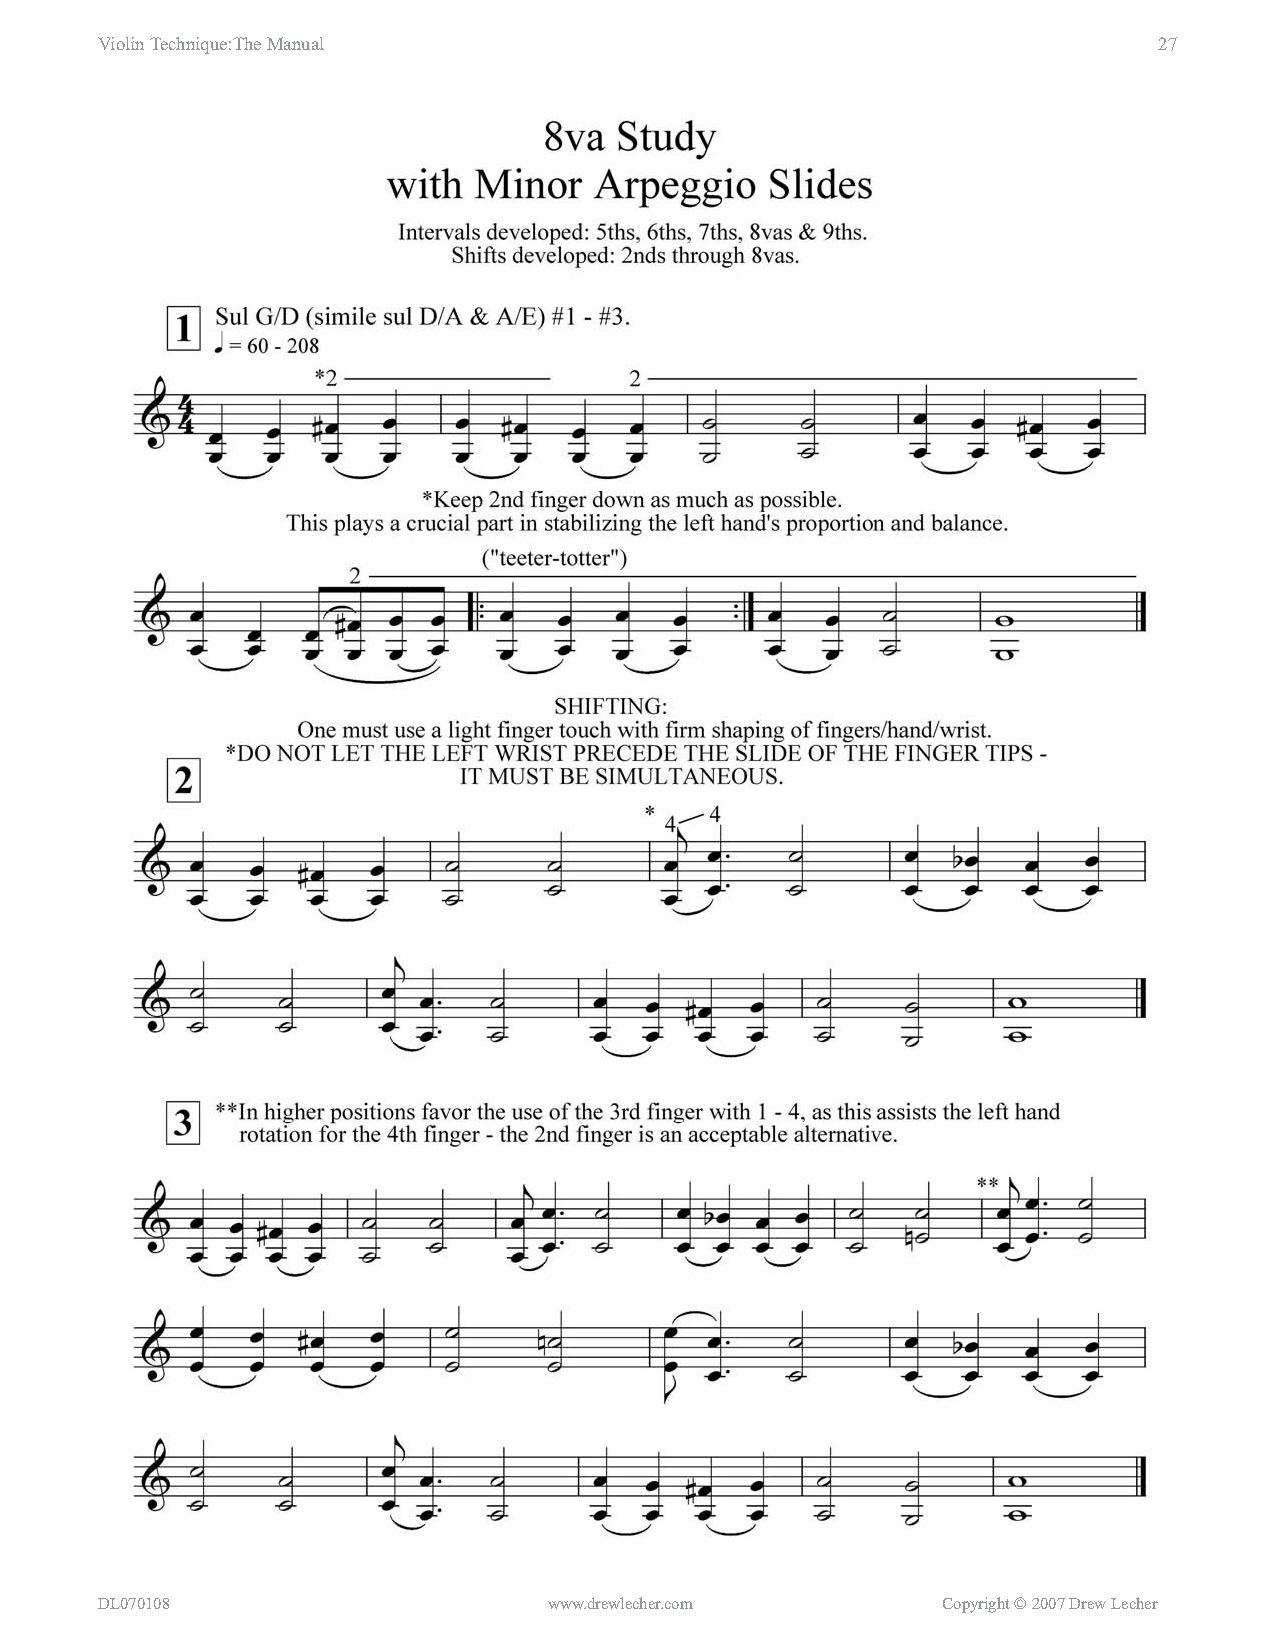 norton manual of music notation pdf